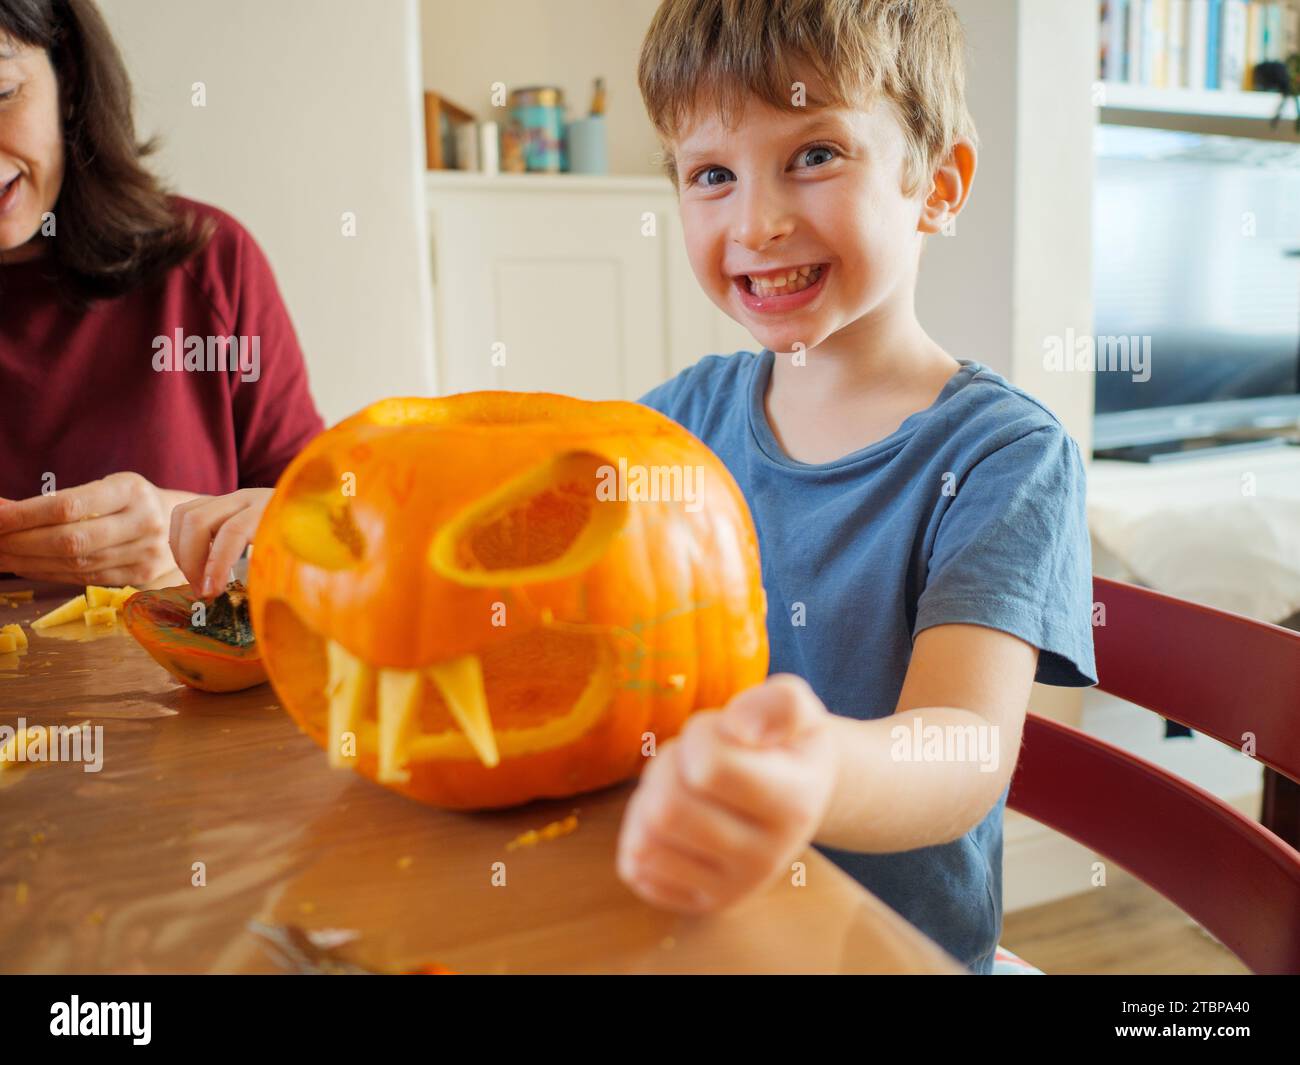 Lächelndes, glückliches kleines Kind, das Spaß daran hat, Gruselgesicht-Kürbis zu machen, um halloween zu Hause, Großbritannien, zu feiern Stockfoto